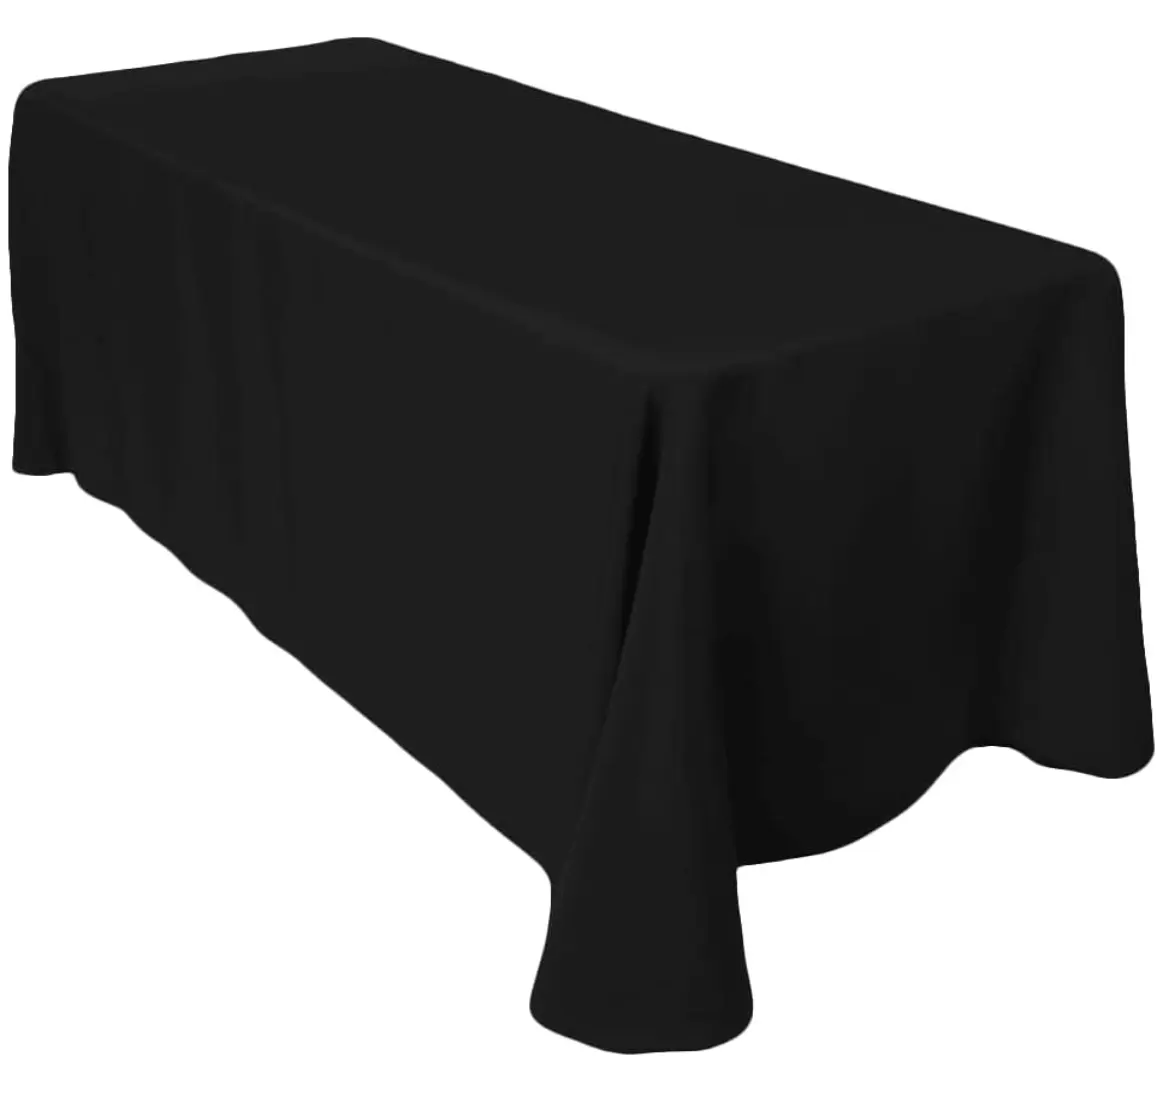 Taplak meja hitam kustom taplak meja persegi panjang acara pernikahan taplak meja bahan poliester antiair elegan Decore kain taplak meja pesta